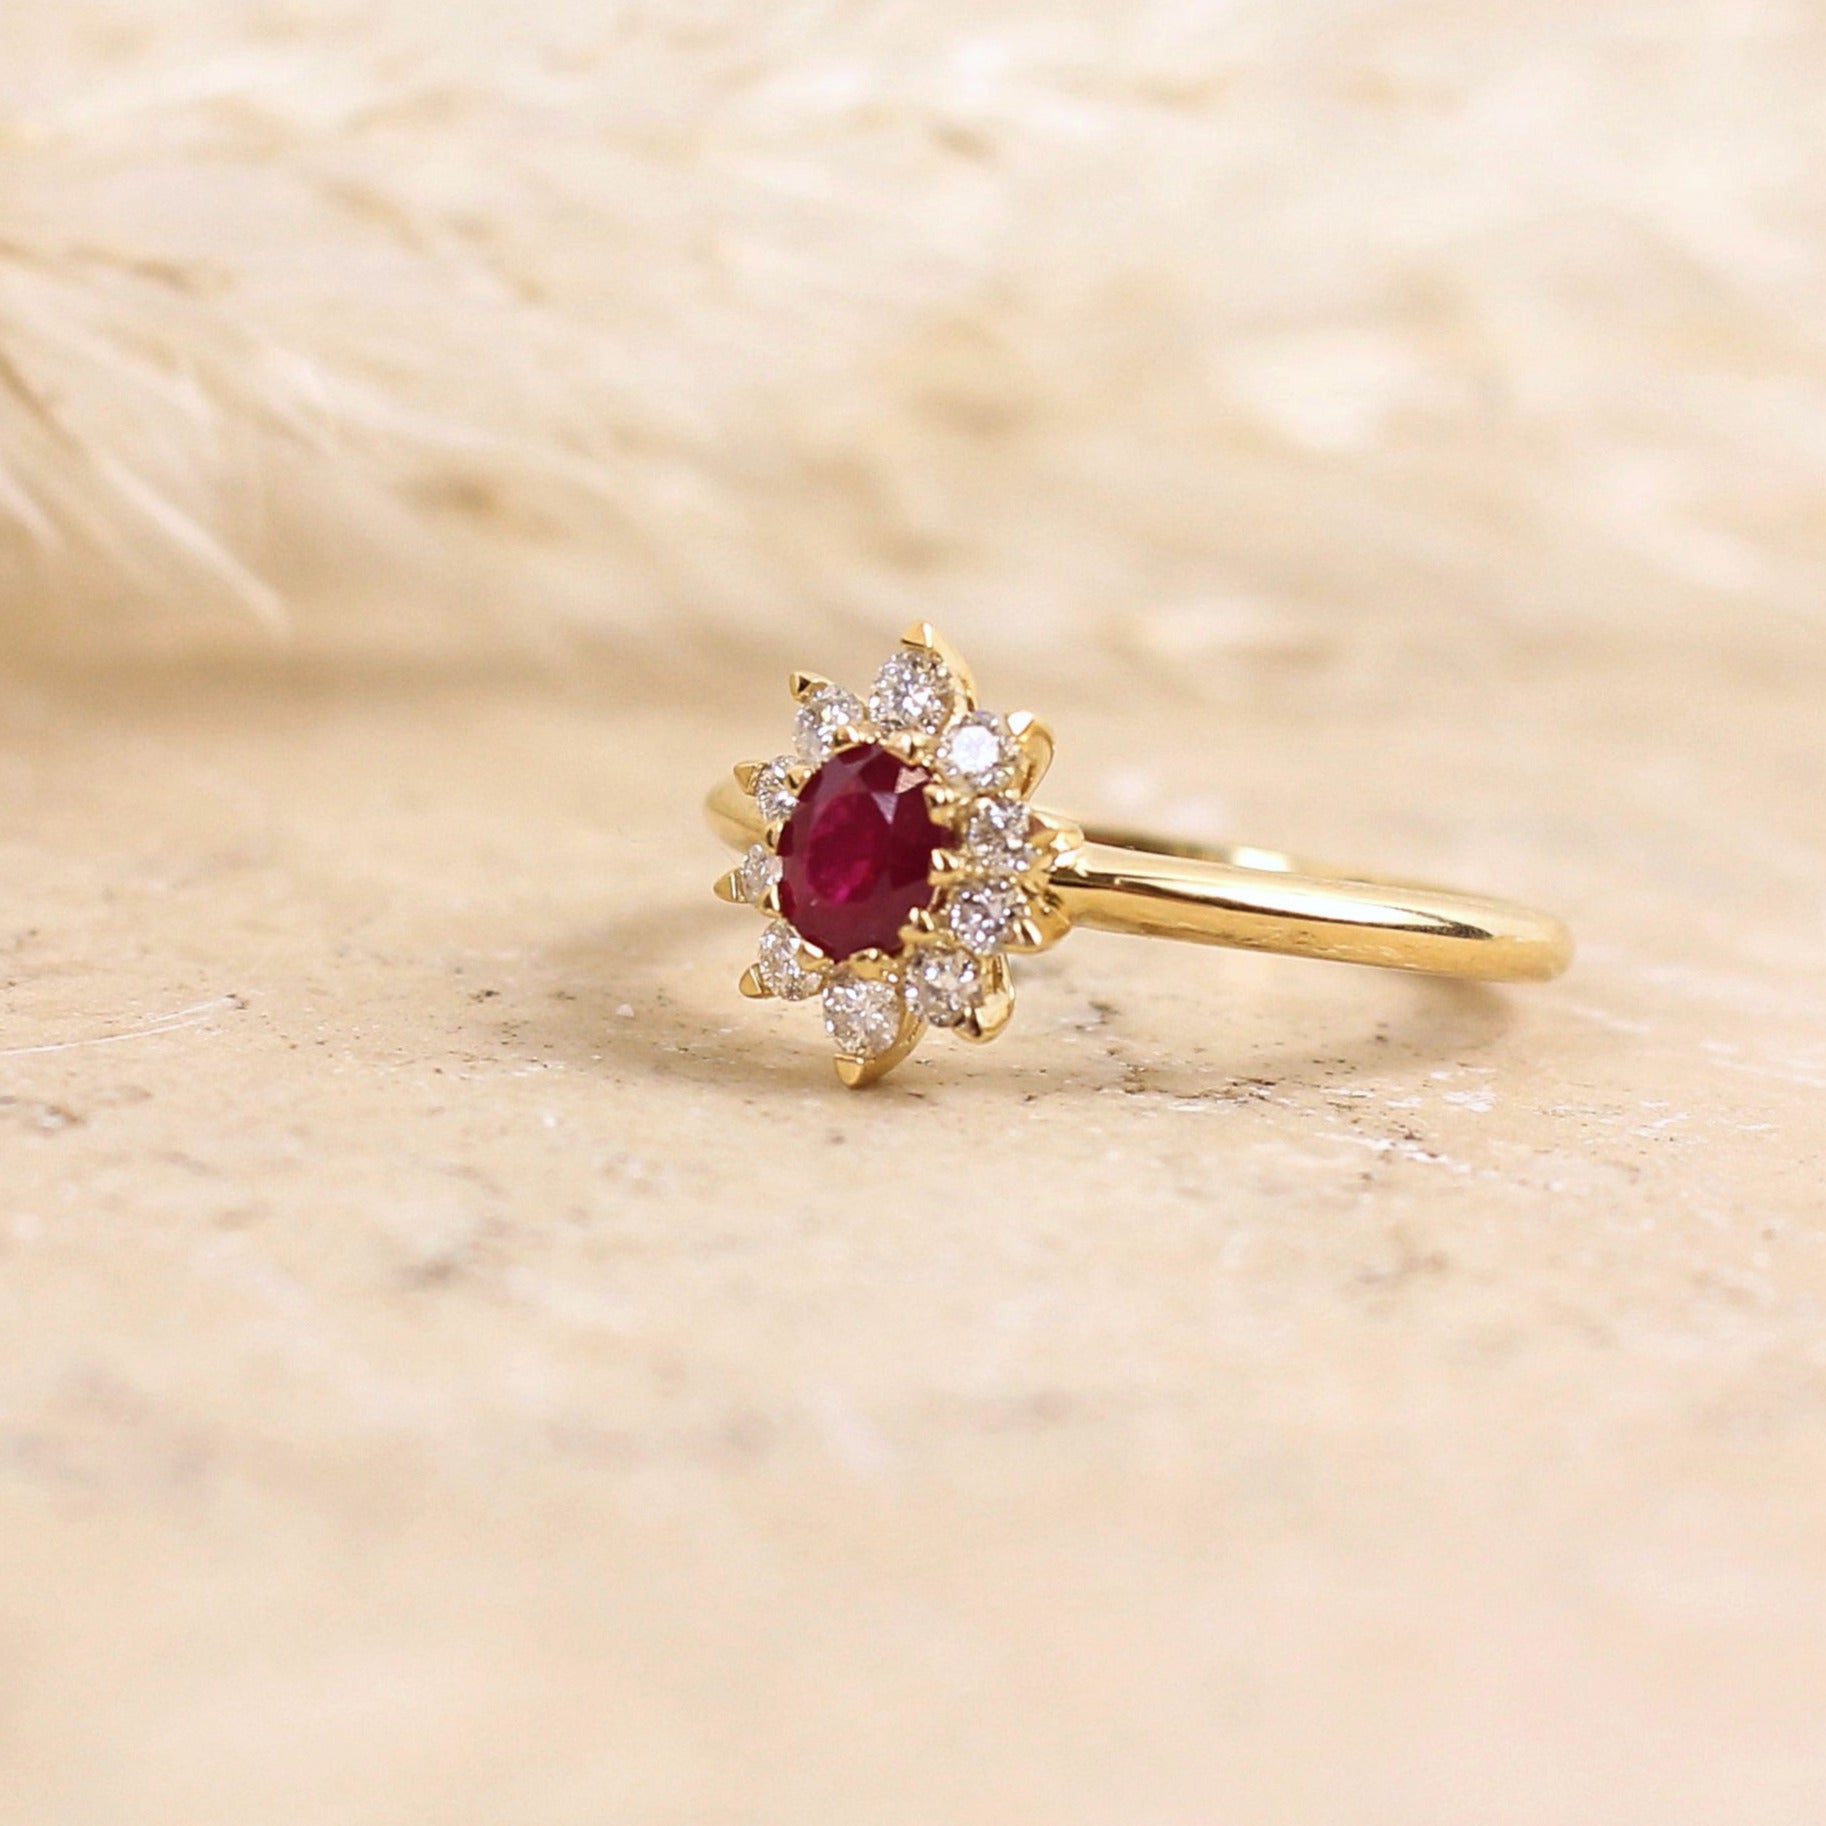 Jolie bague fleur, dite bague marguerite, ornée d'un rubis taille ovale entièrement entouré de diamants